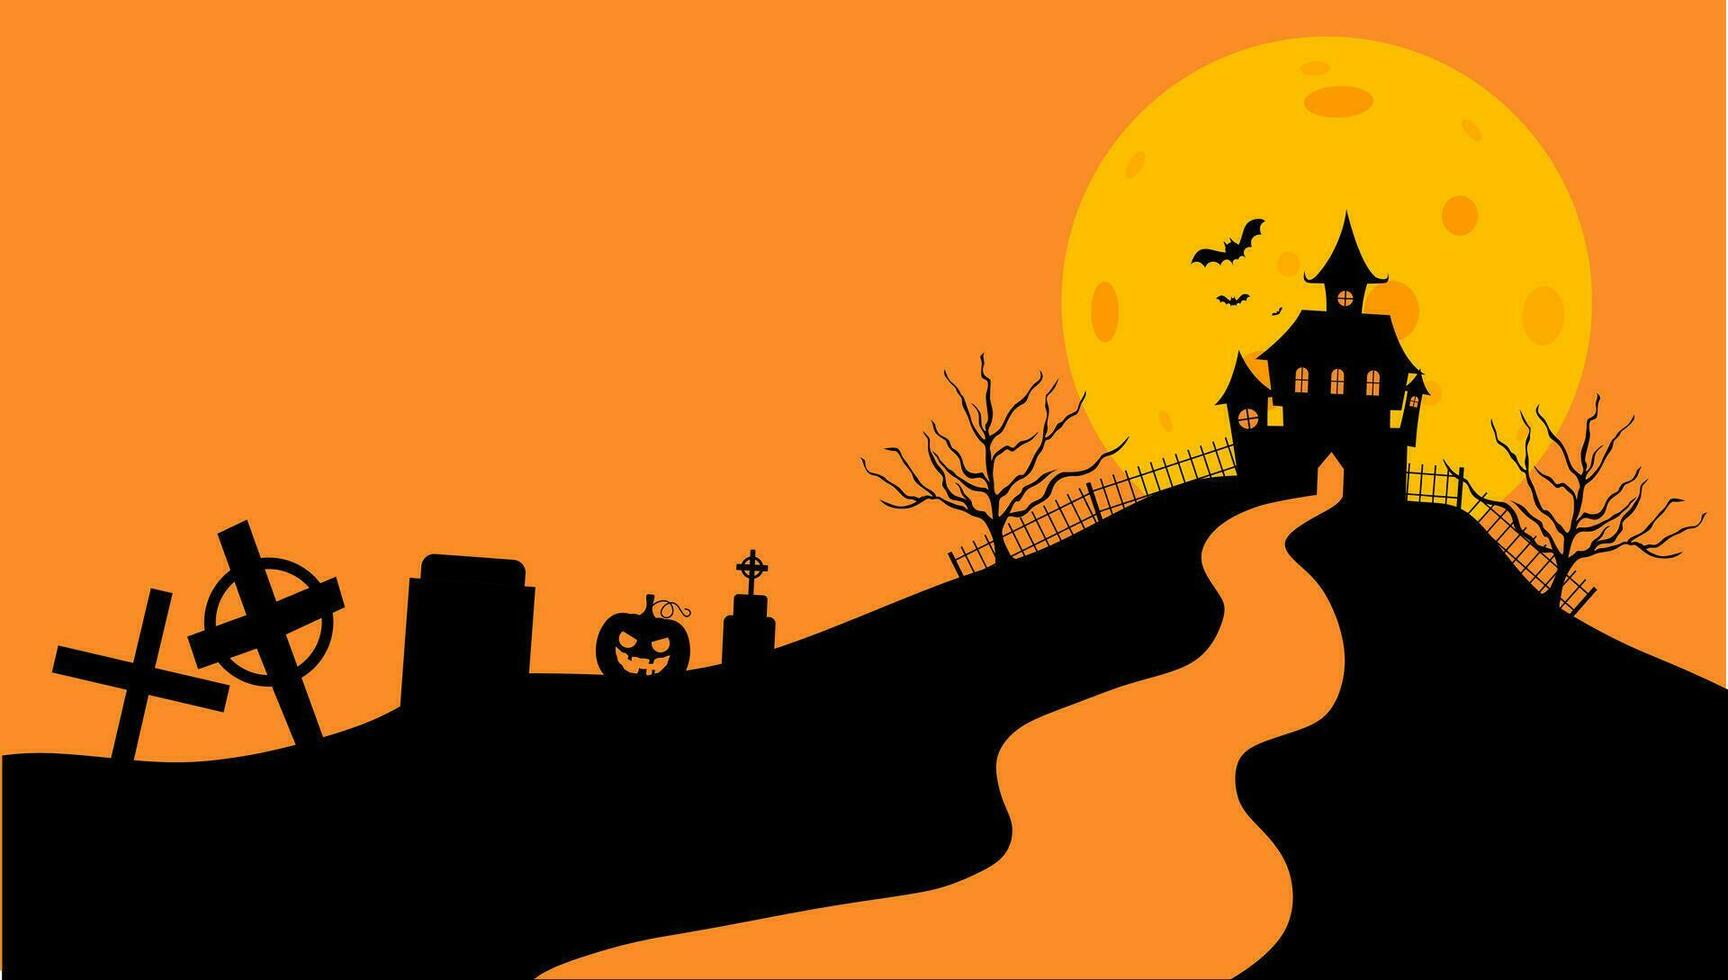 Halloween Schloss eben Design Vektor Illustration. Halloween Banner mit Silhouette von unheimlich Schloss auf Orange Hintergrund mit voll Mond. Illustration zum Urlaub Karten, Einladungen, Banner